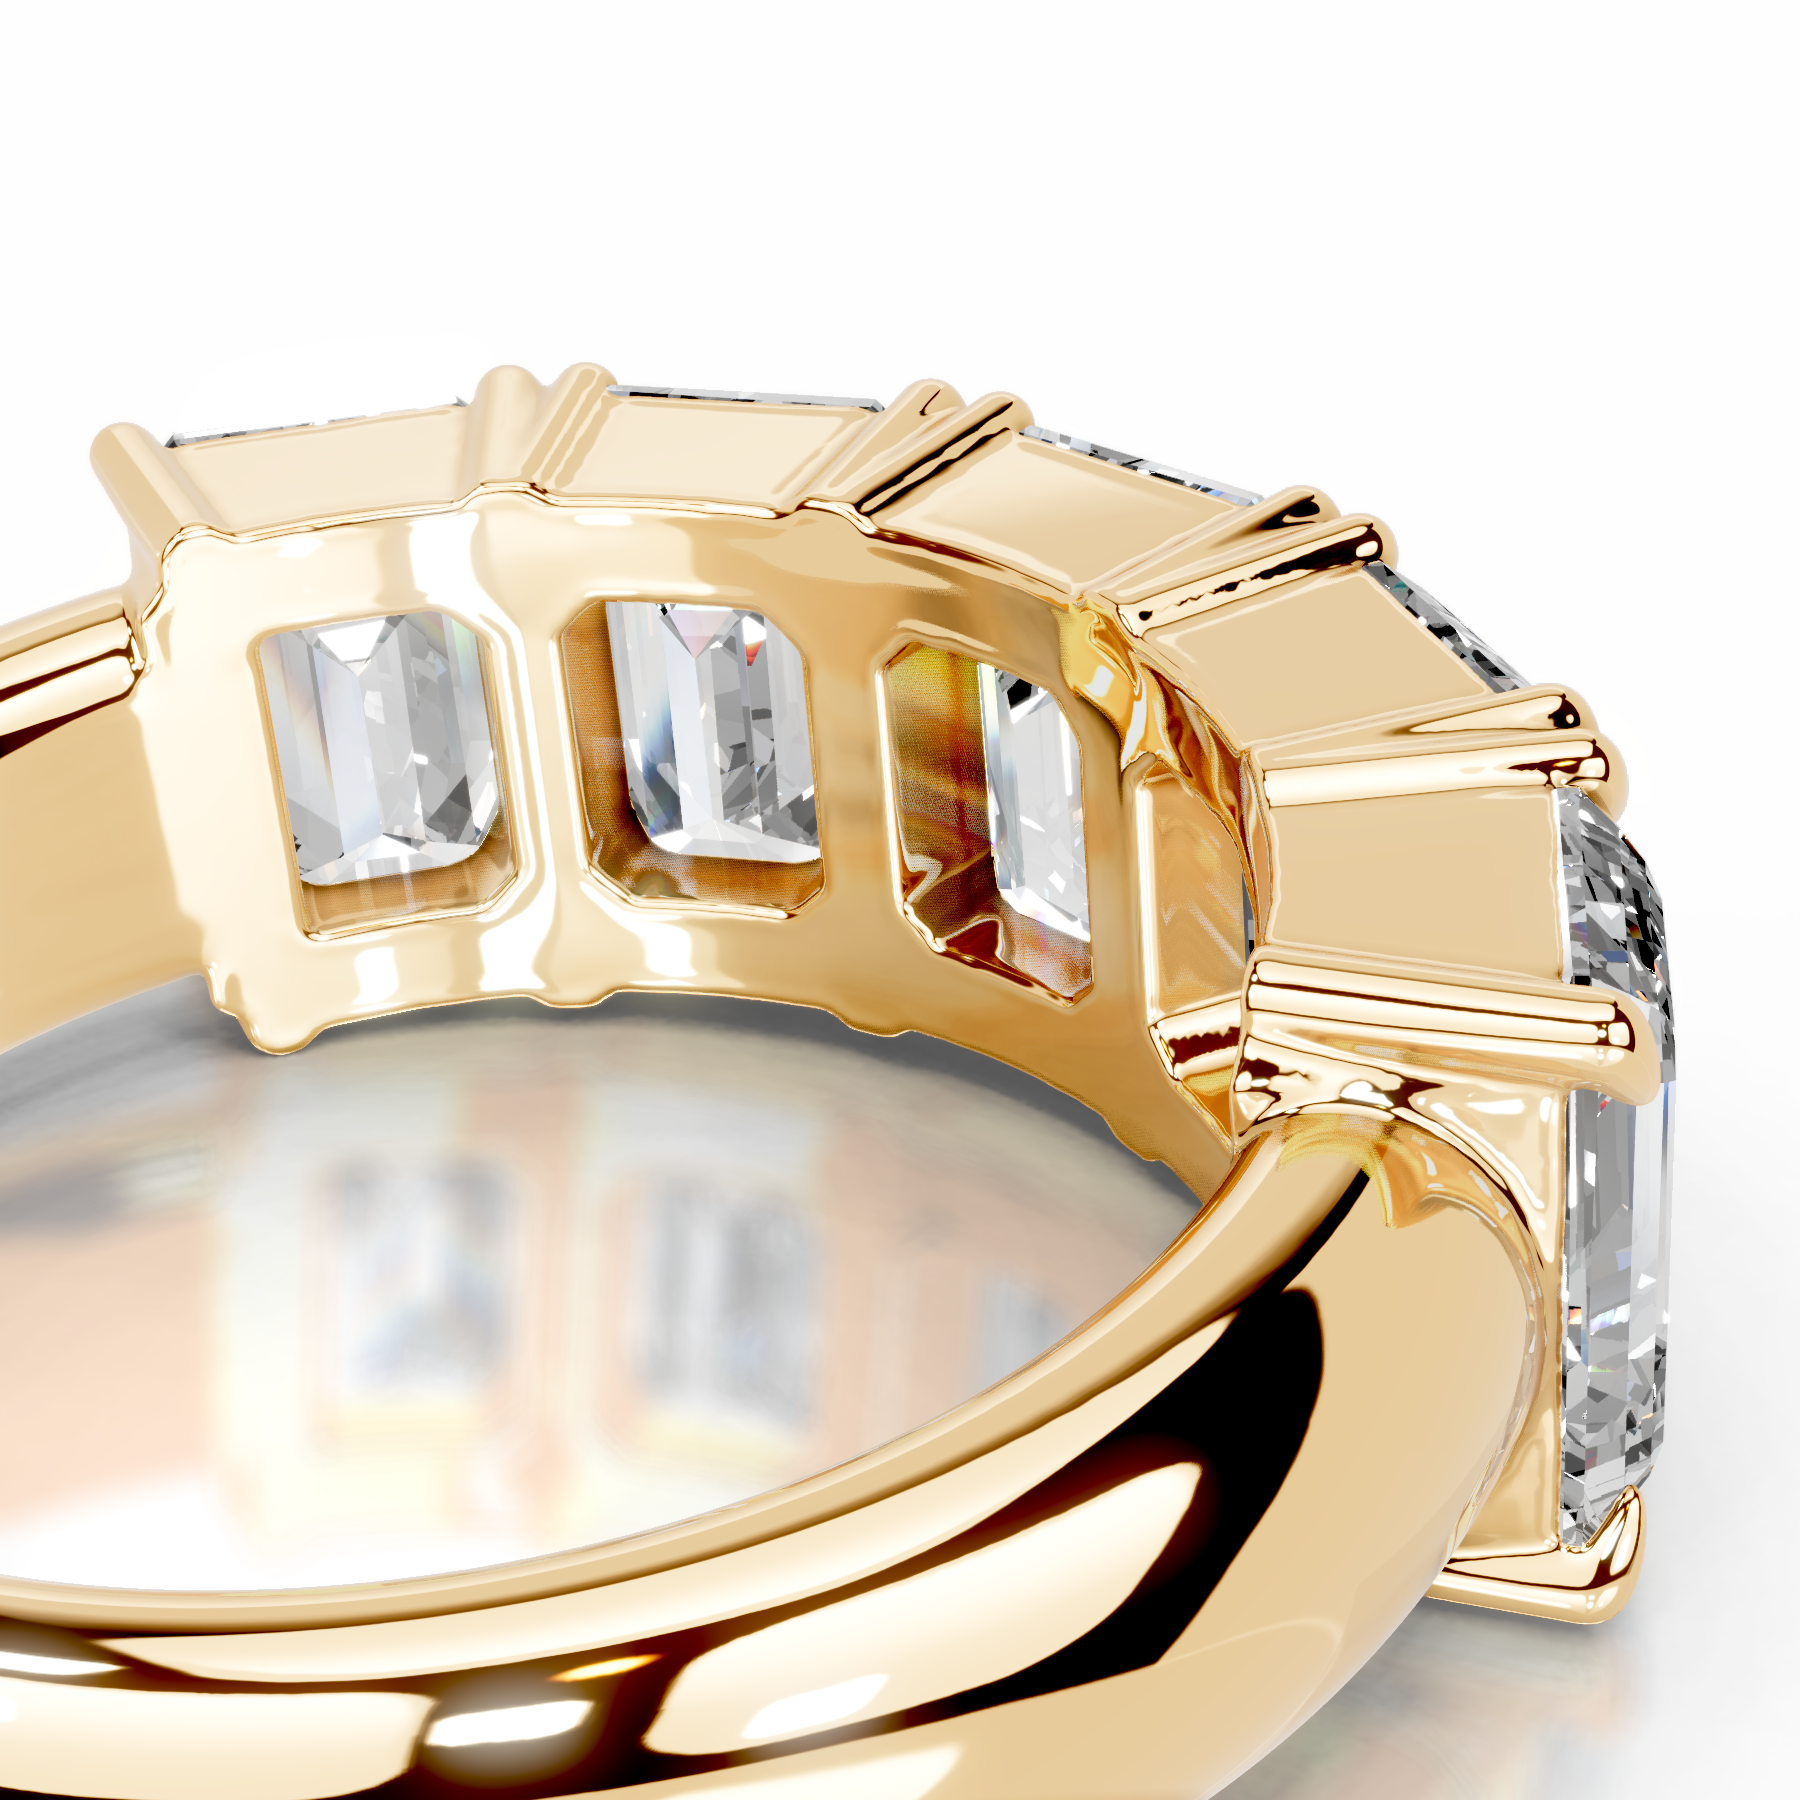 Shandra Diamond Wedding Ring   (2.5 Carat) -18K Yellow Gold